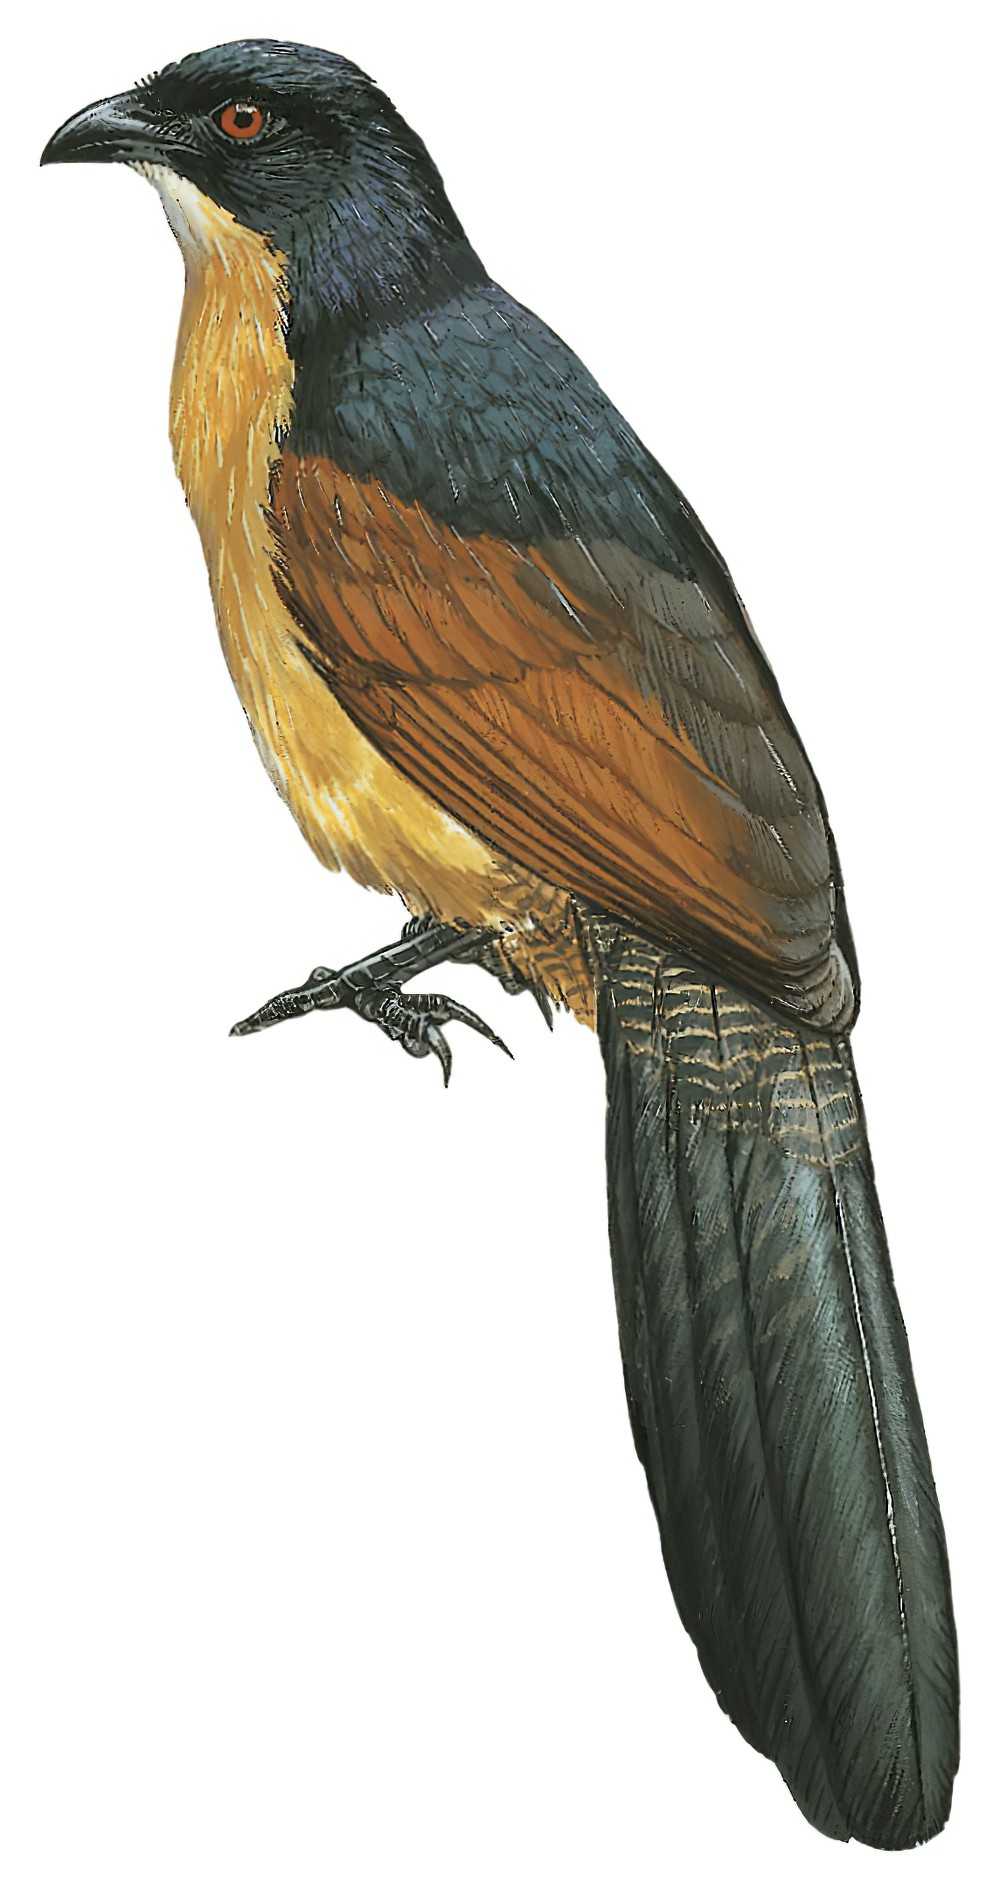 Gabon Coucal / Centropus anselli